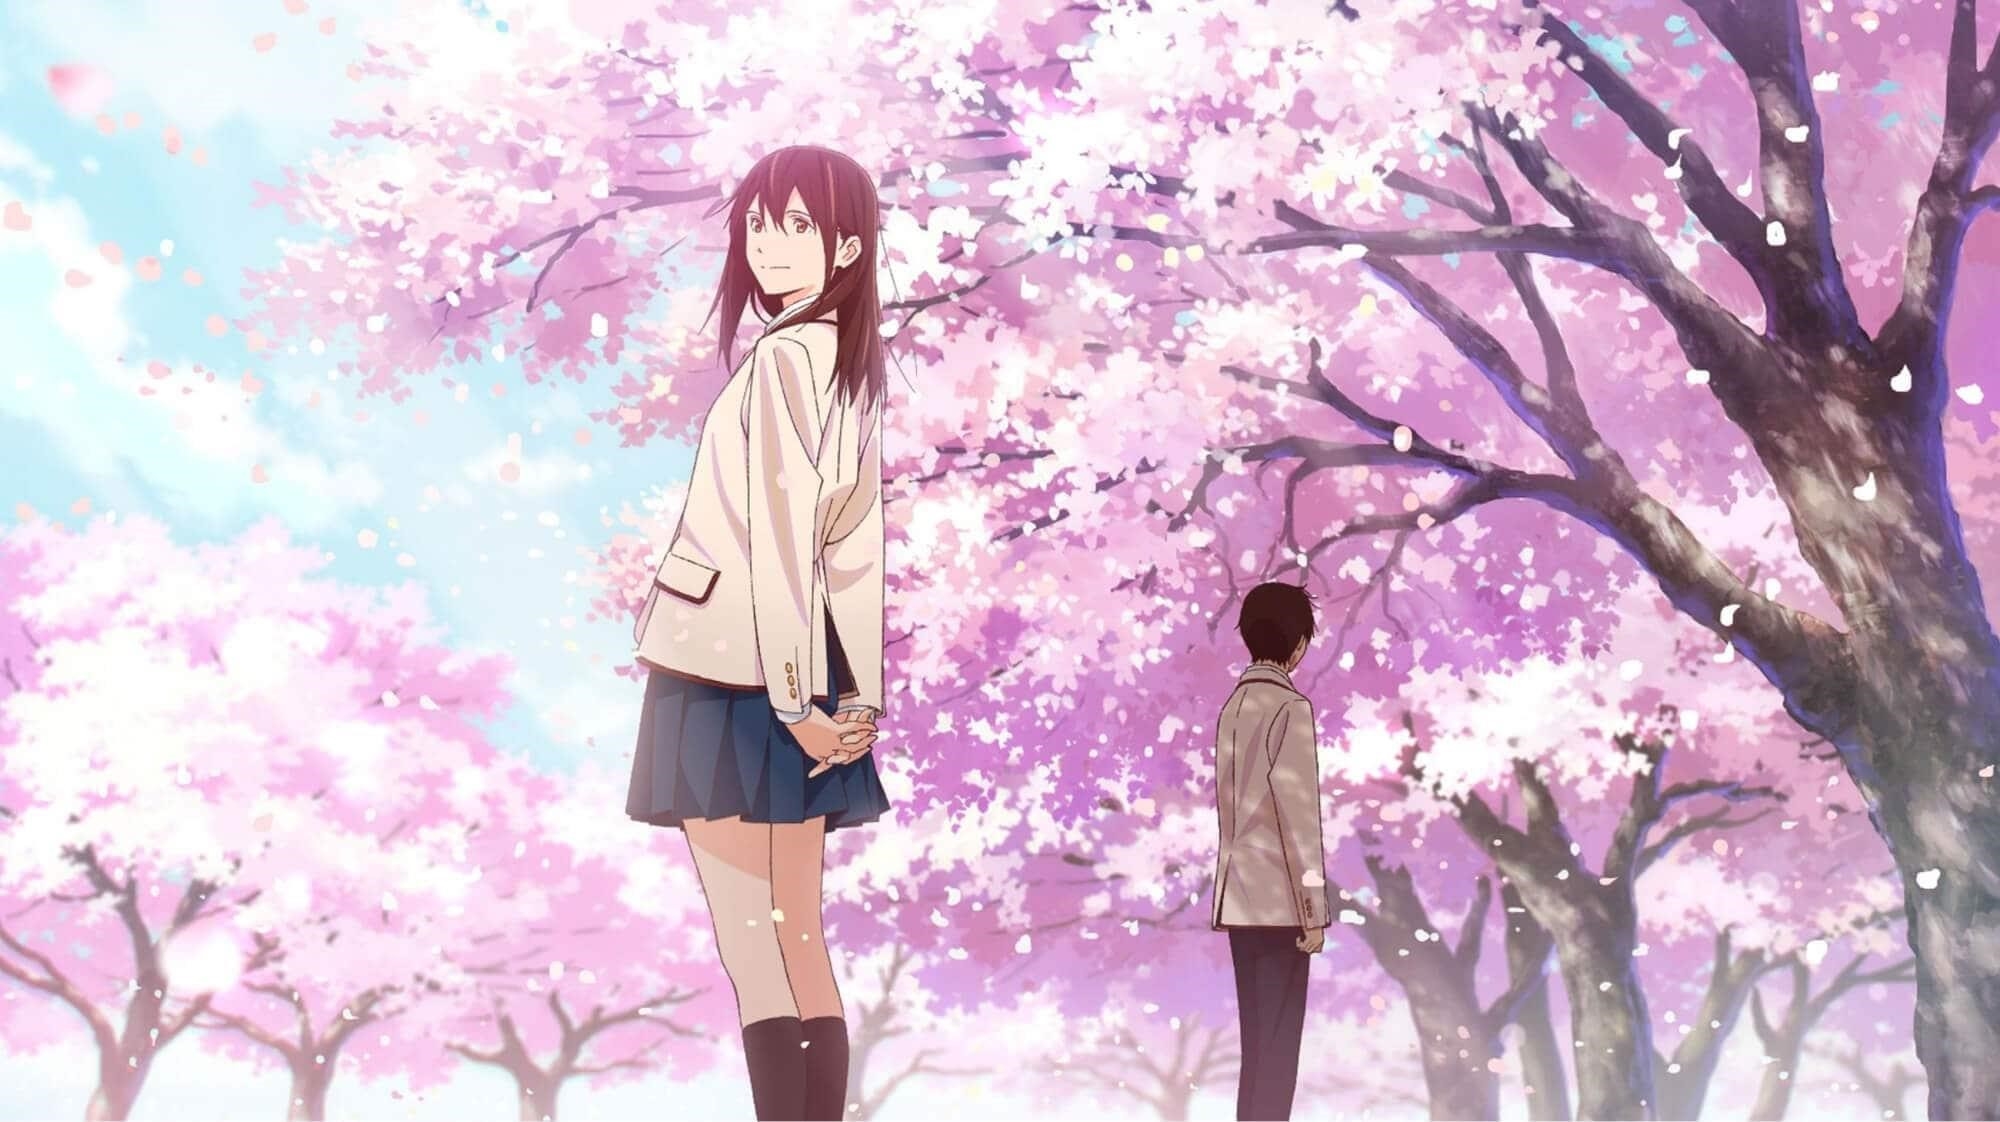 Hình anime của hoa đào dành cho nhau một con đường riêng.